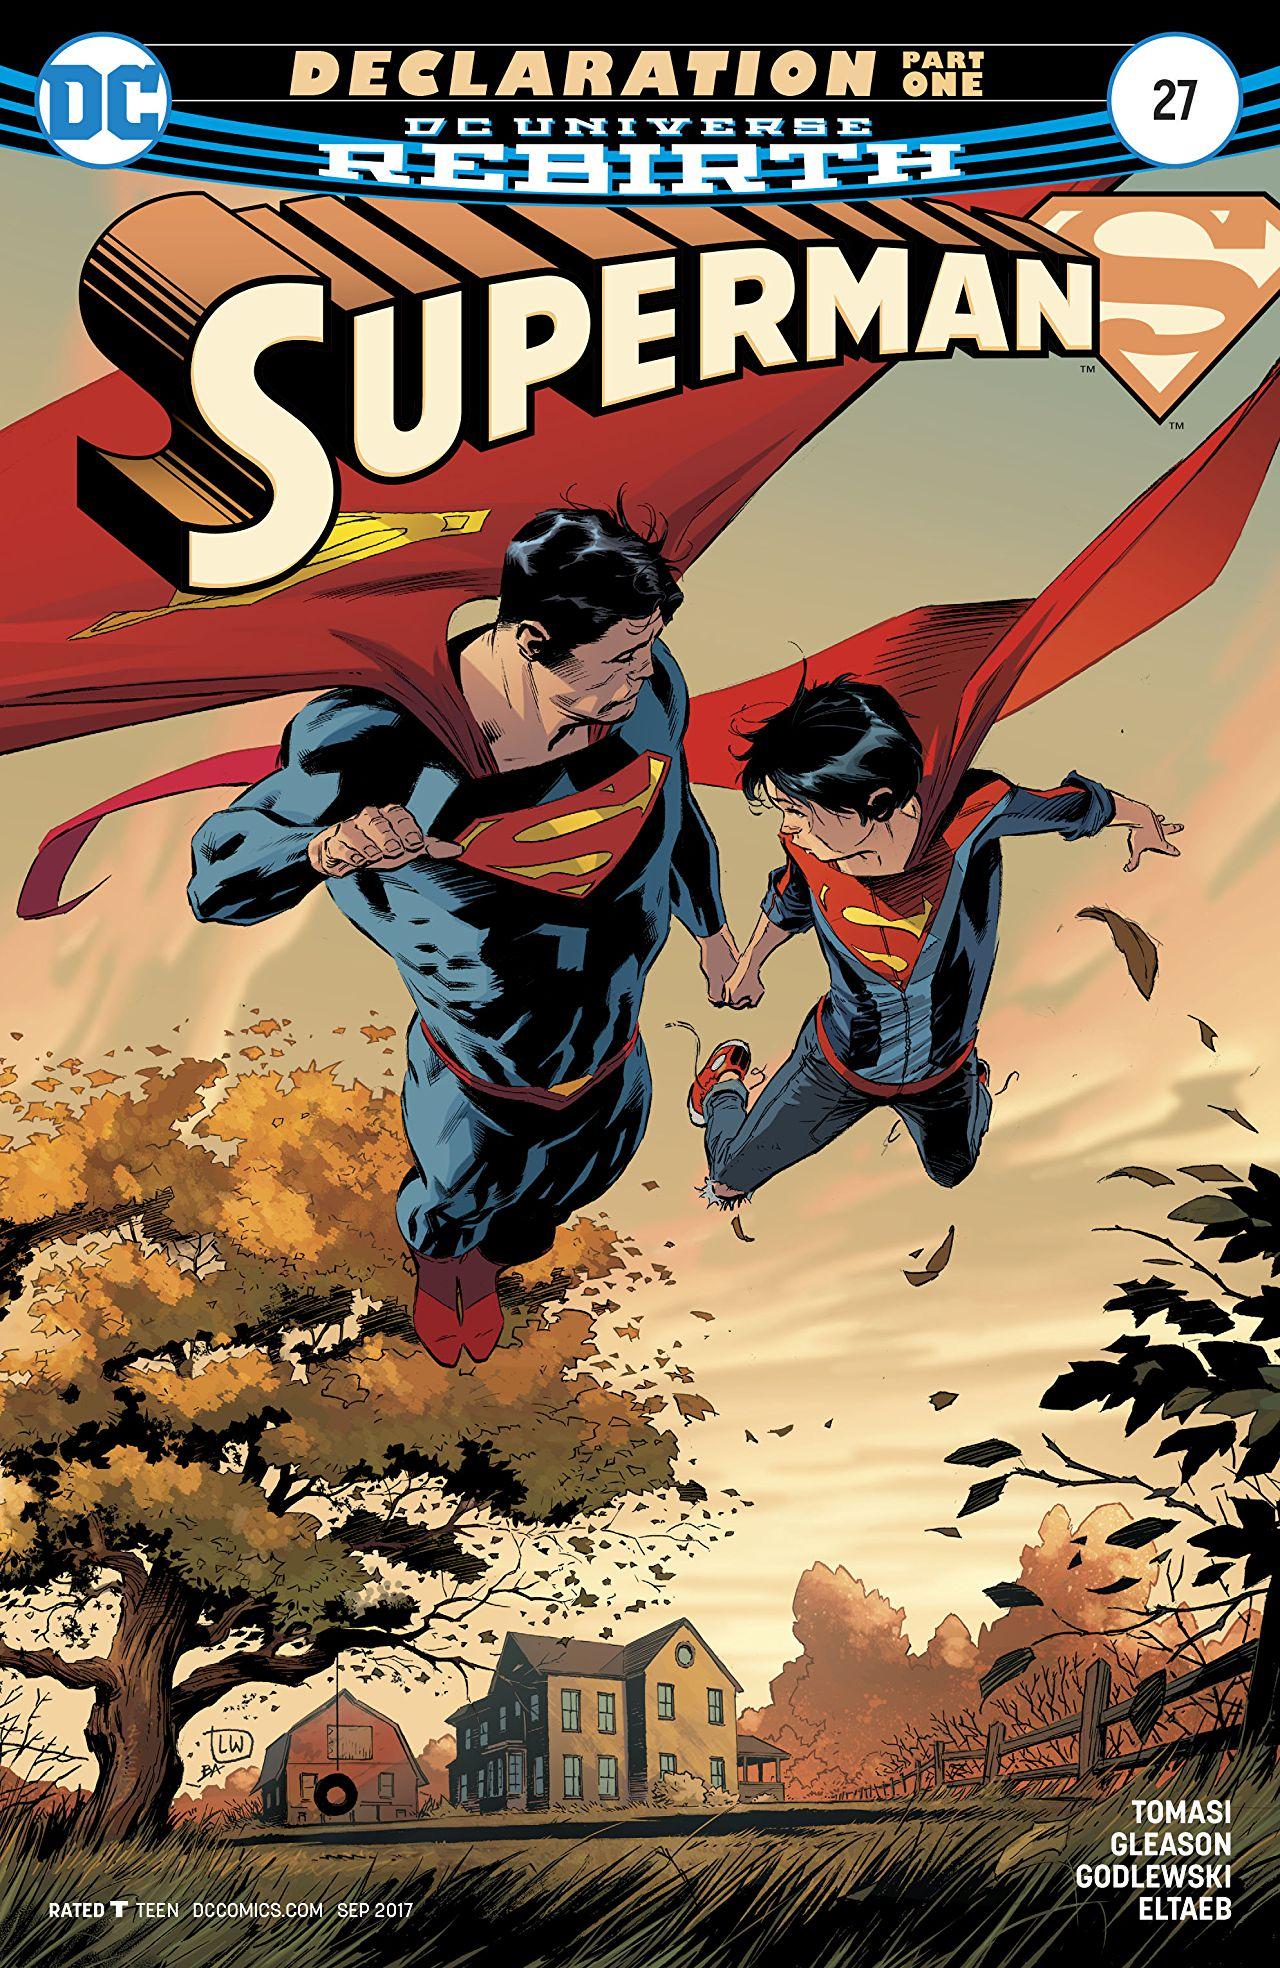 Superman Vol. 4 #27